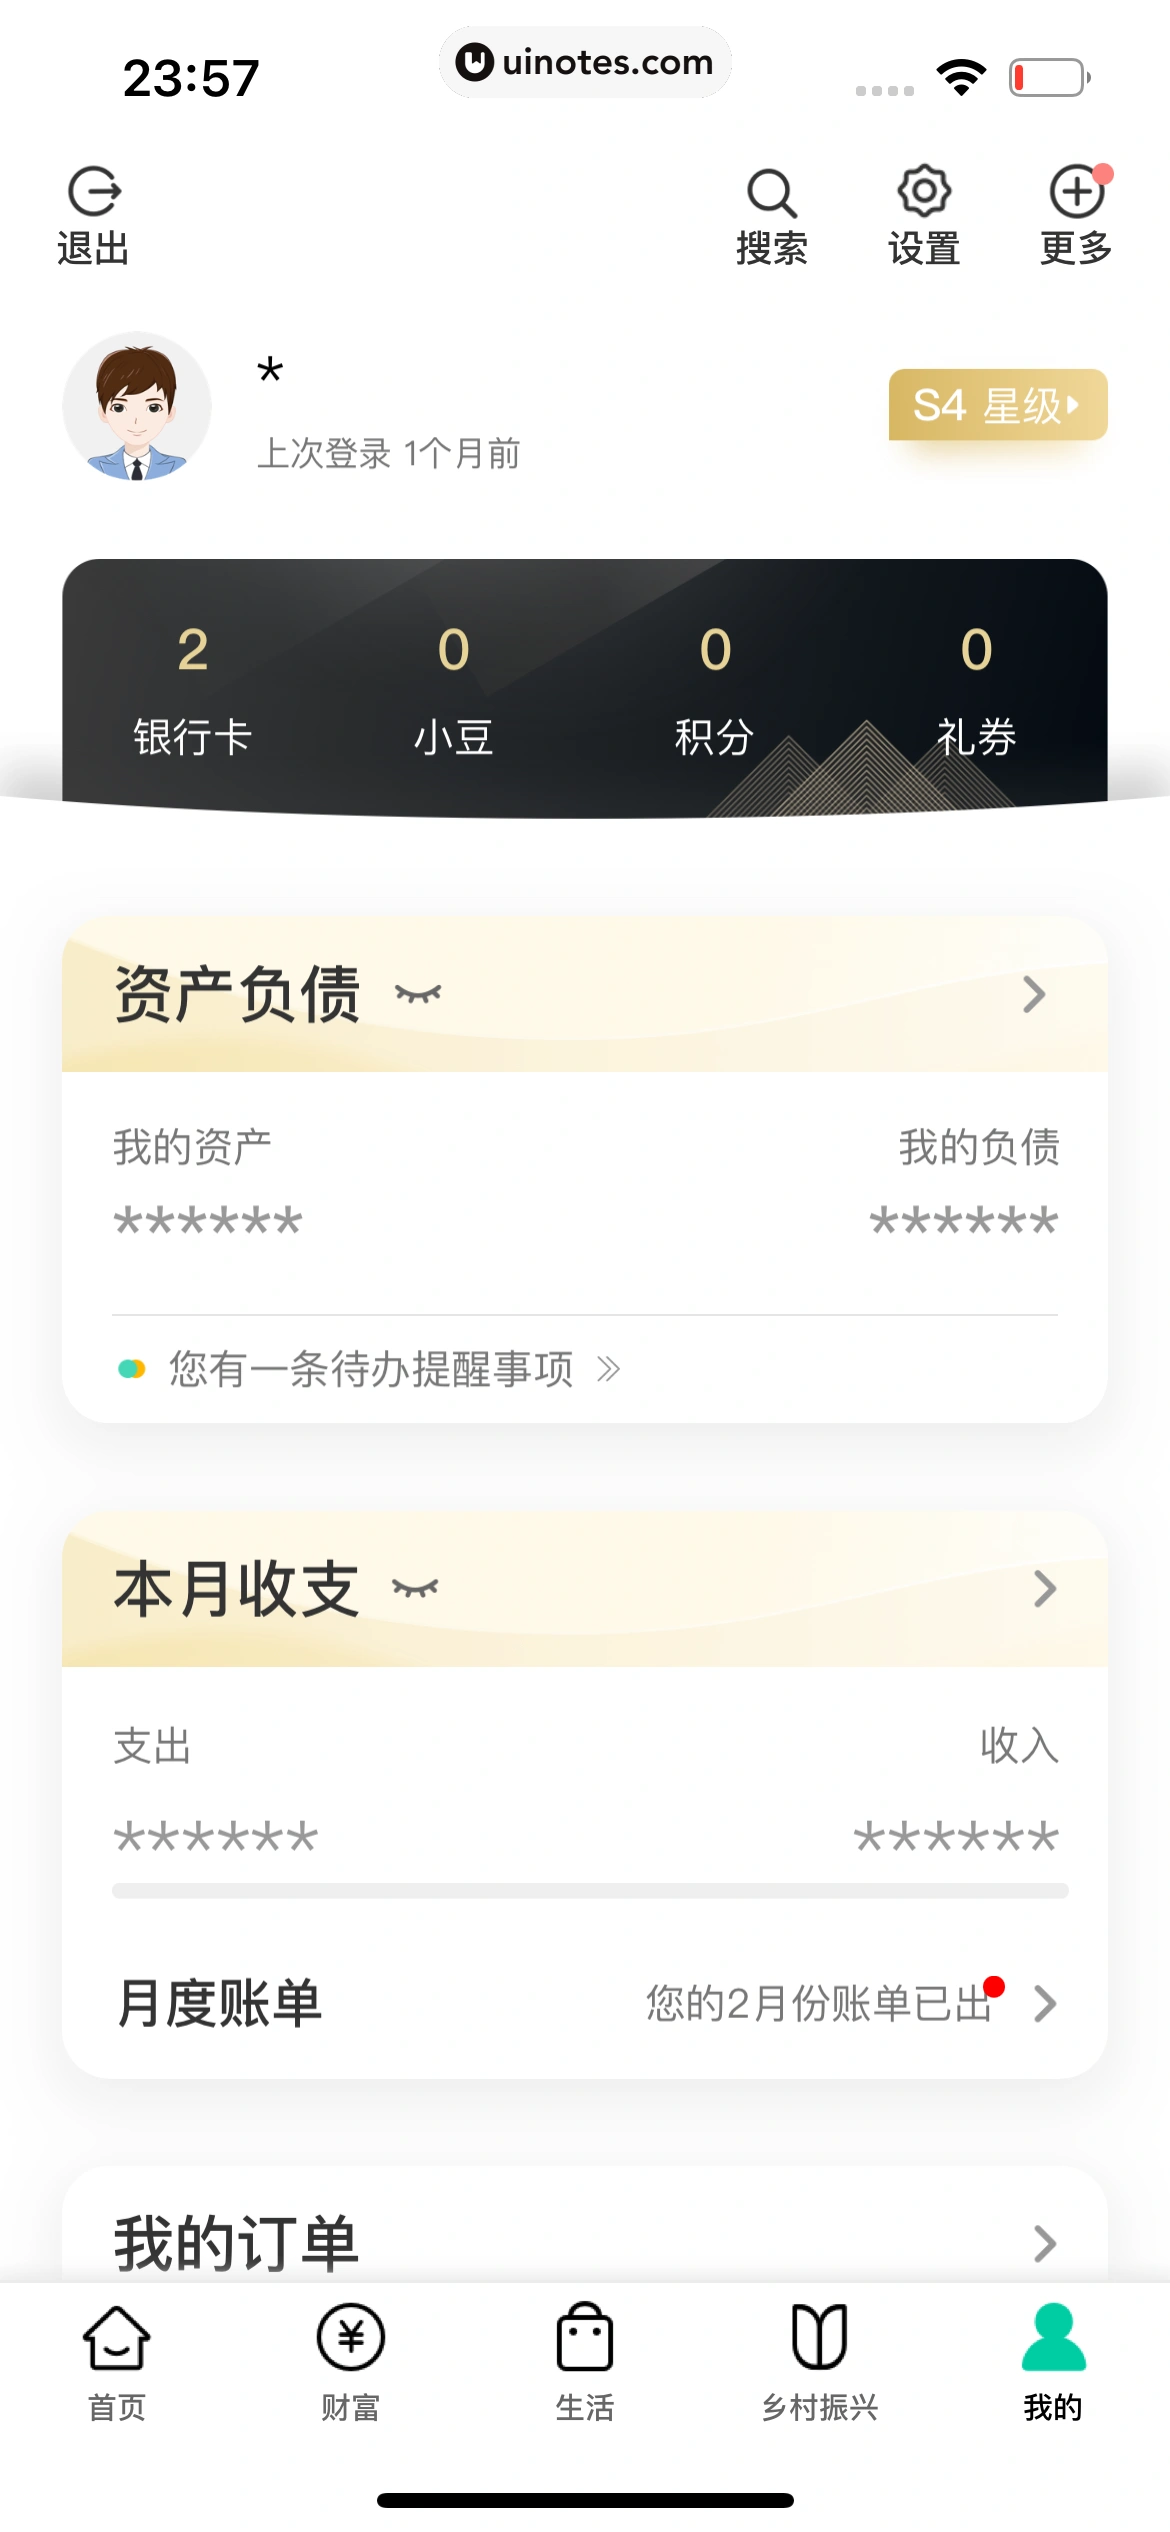 中国农业银行 App 截图 239 - UI Notes